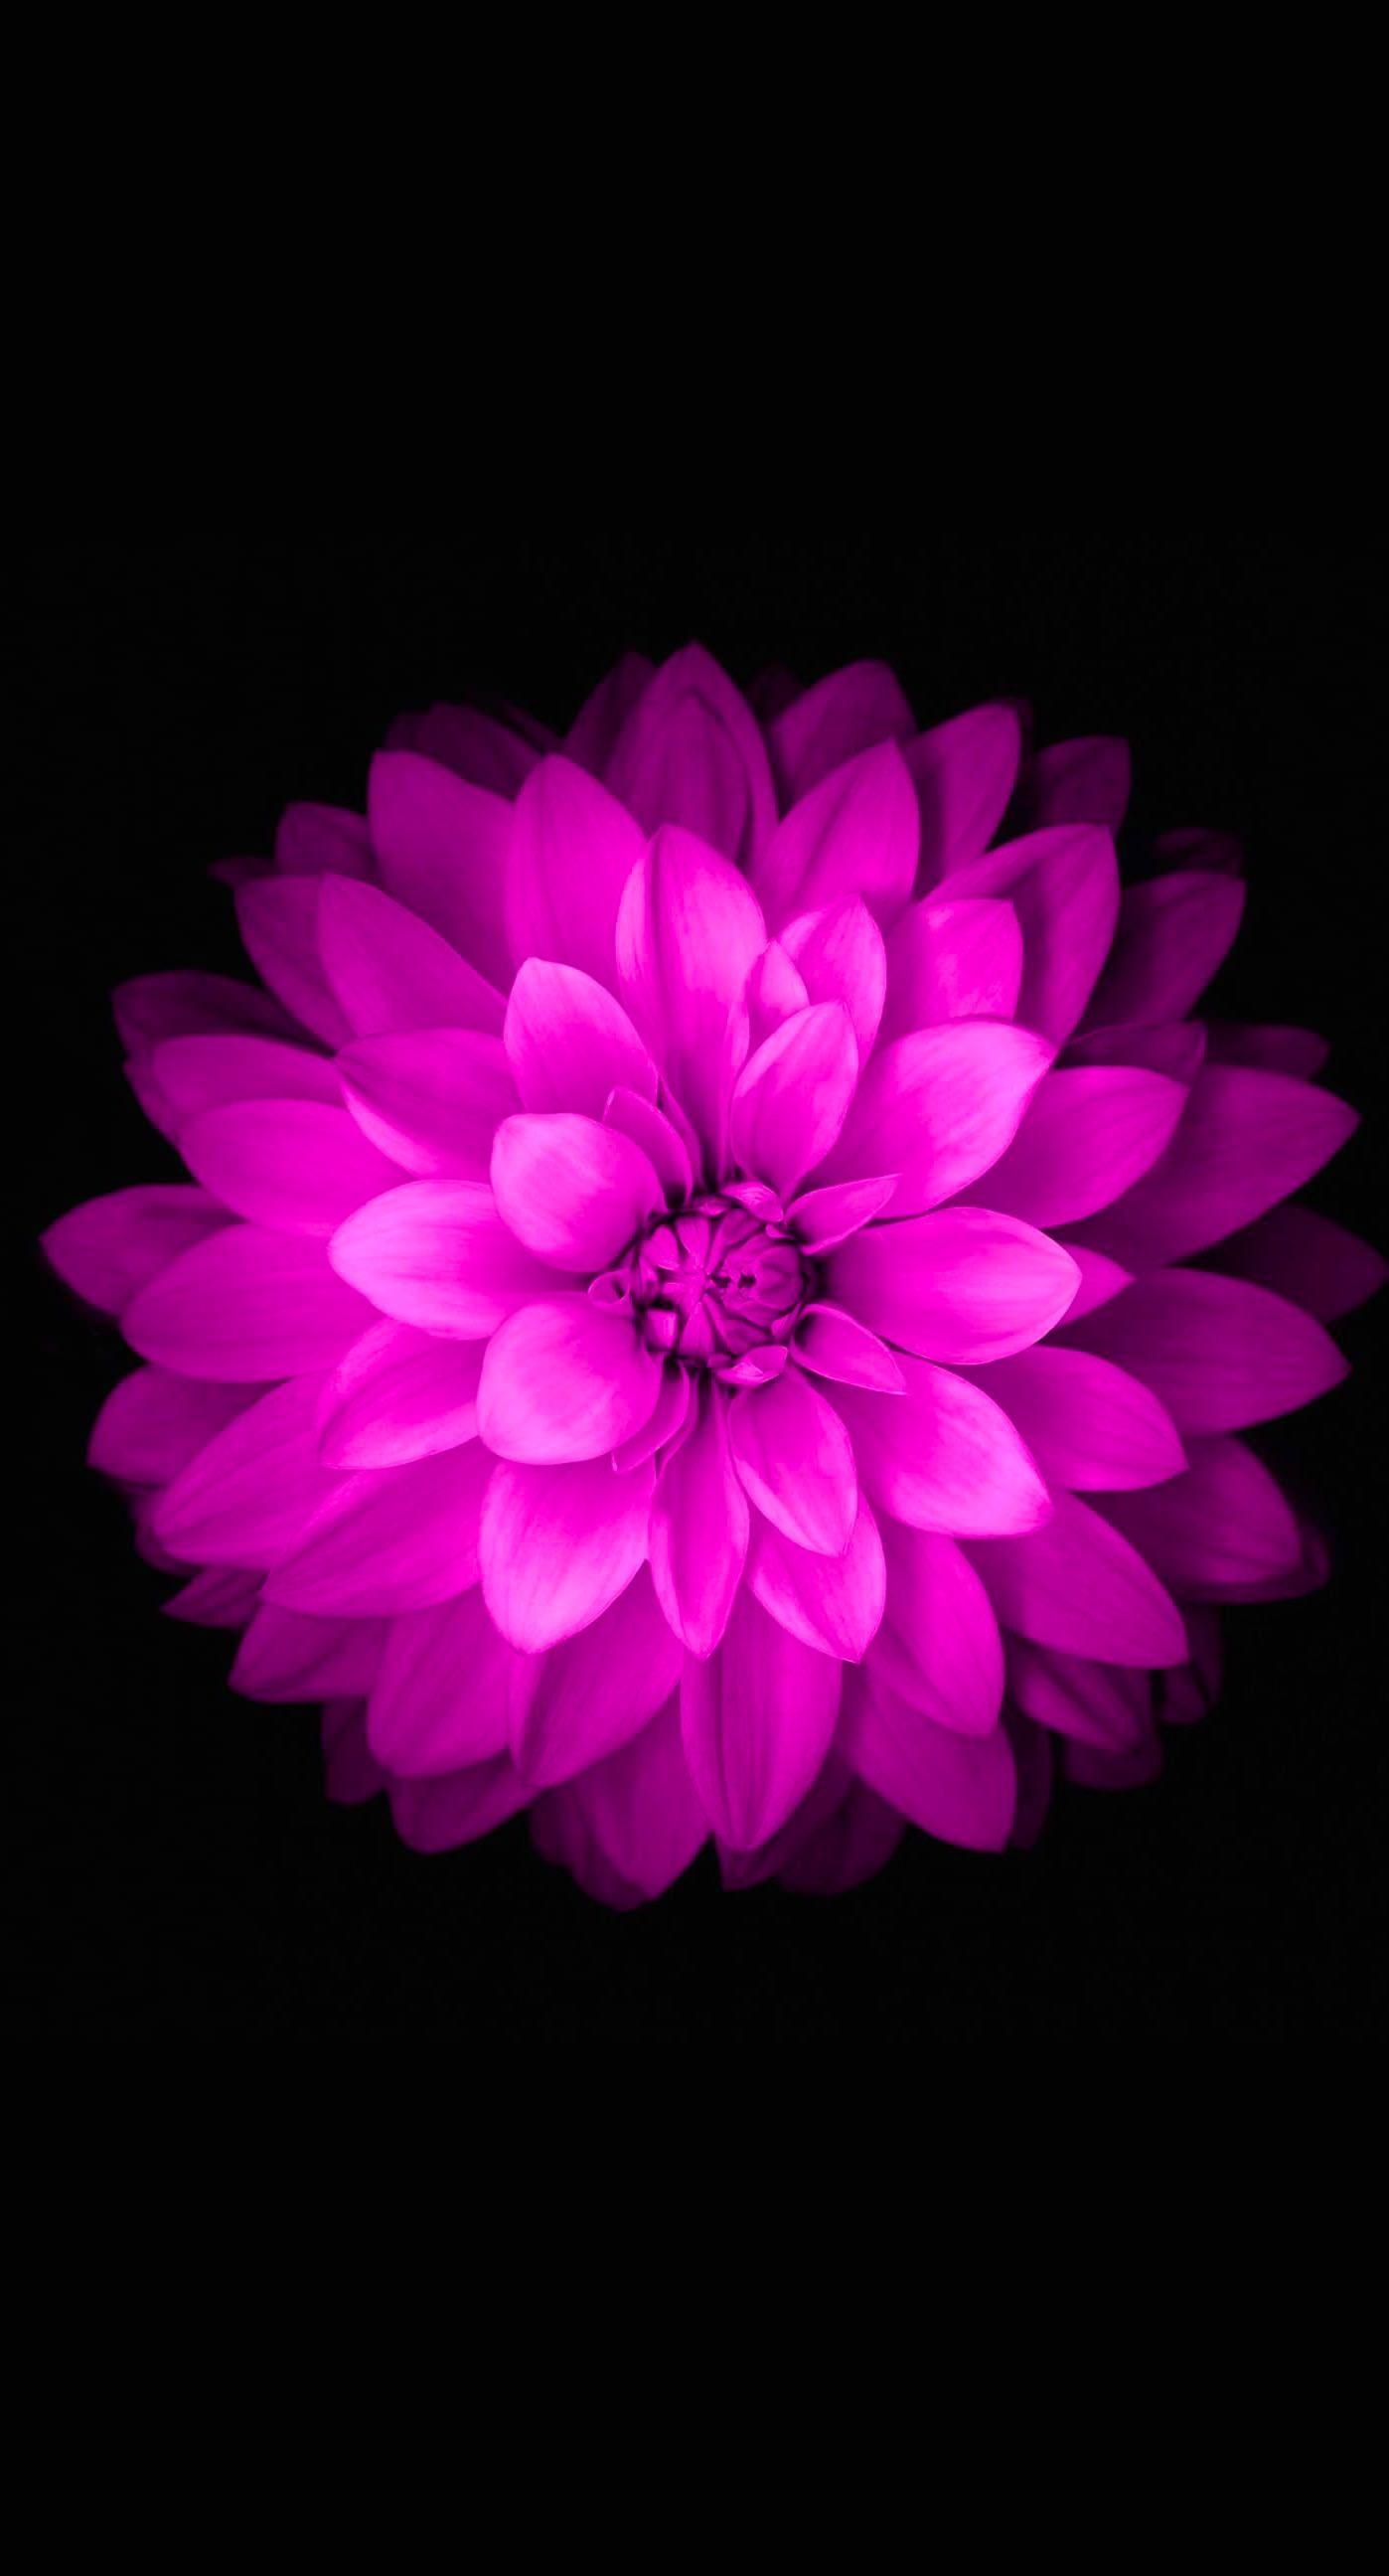 Dark Purple Flower iPhone Wallpaper Free Dark Purple Flower